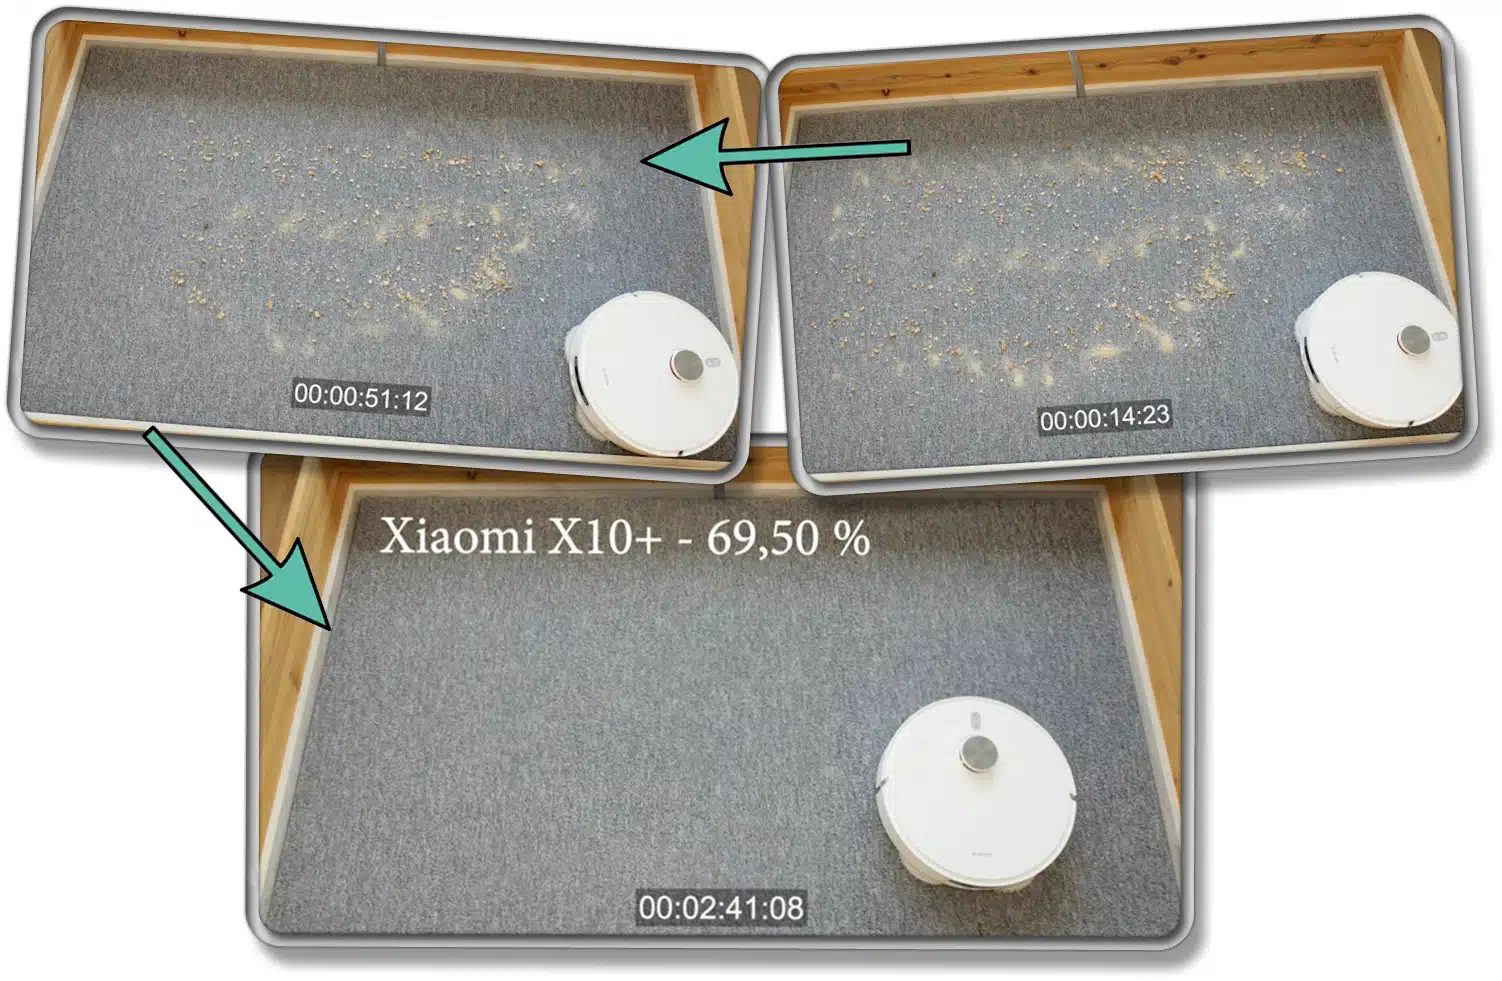 Die gemessene Saugleistung des Xiaomi X10+ auf Teppichboden